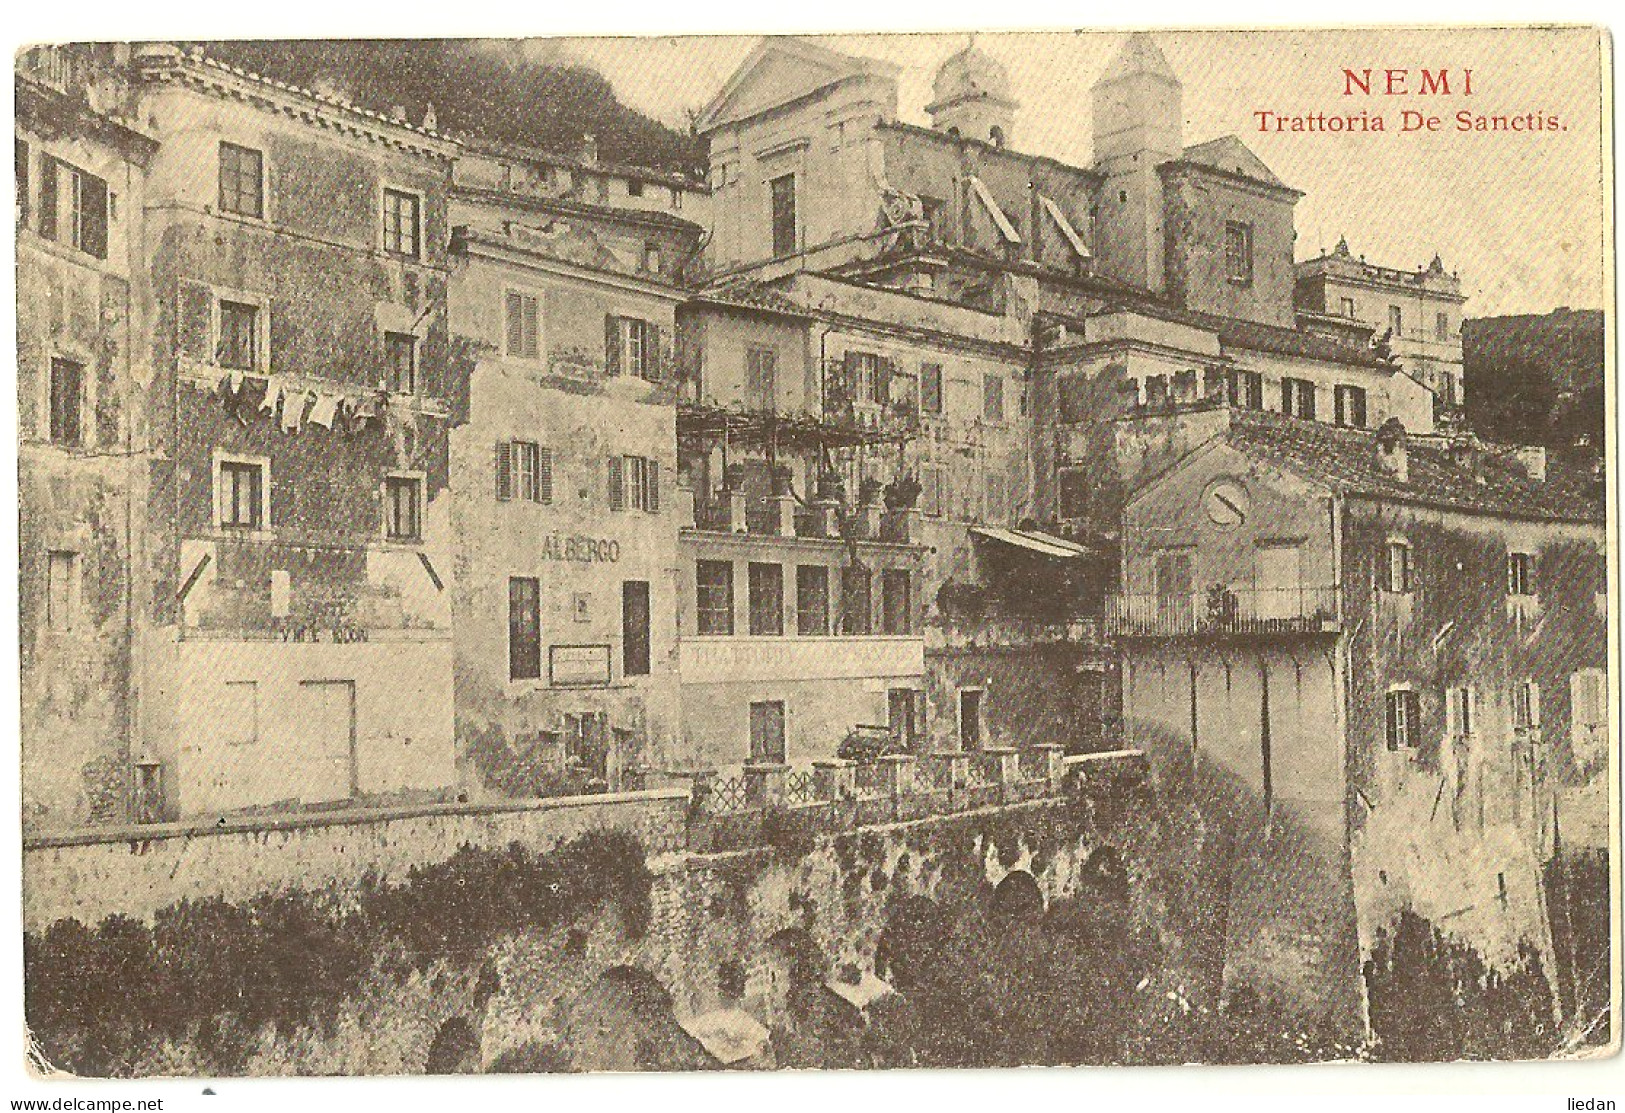 NEMI - Trattoria De Sanctis - 1915 - Cafes, Hotels & Restaurants